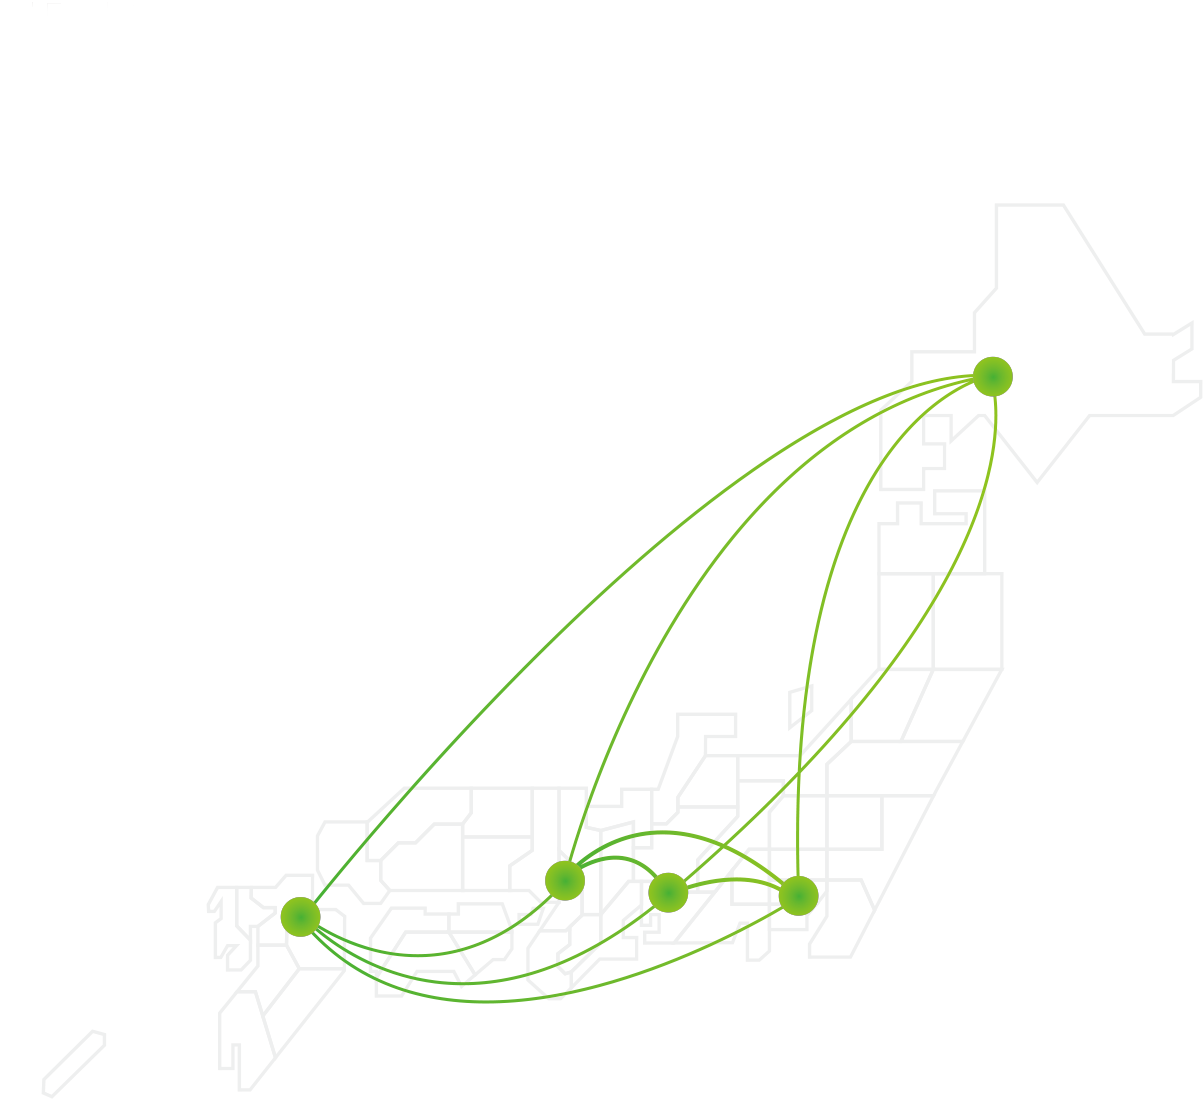 札幌から東京、そして全国へ 日本中に広がる安心の朝日オリコミネットワーク